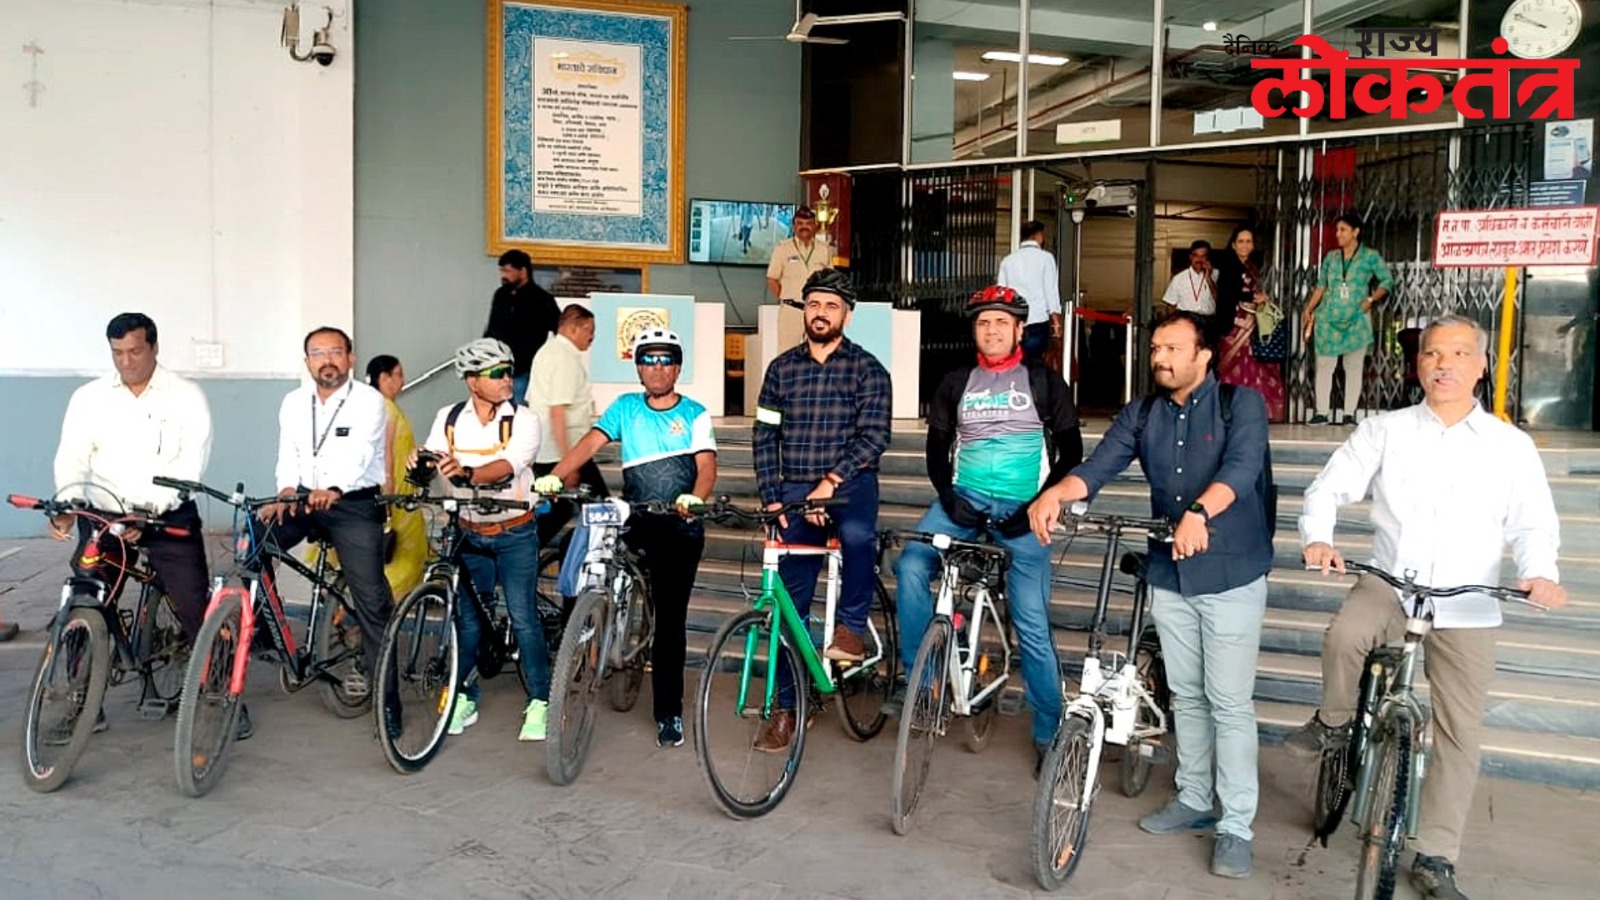 पिंपरी चिंचवड महापालिकेच्या ‘’सायकल टू वर्क थर्सडे’’ या उपक्रमाचा आज शुभारंभ